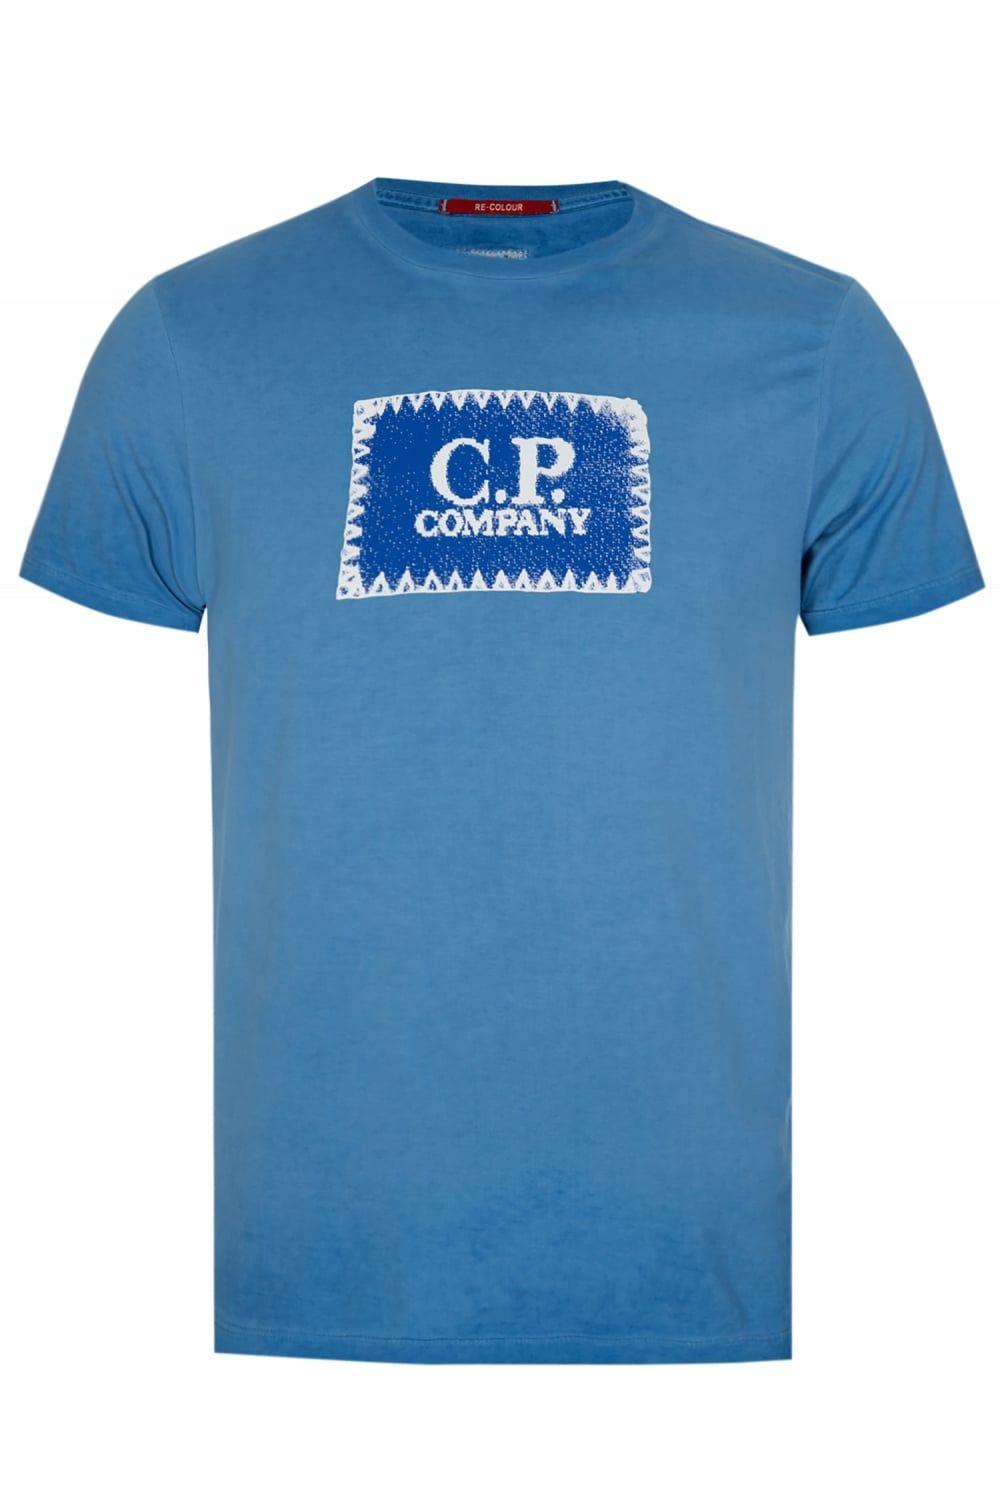 Company with Green Box Logo - C.P Company Box Logo T Shirt Blue